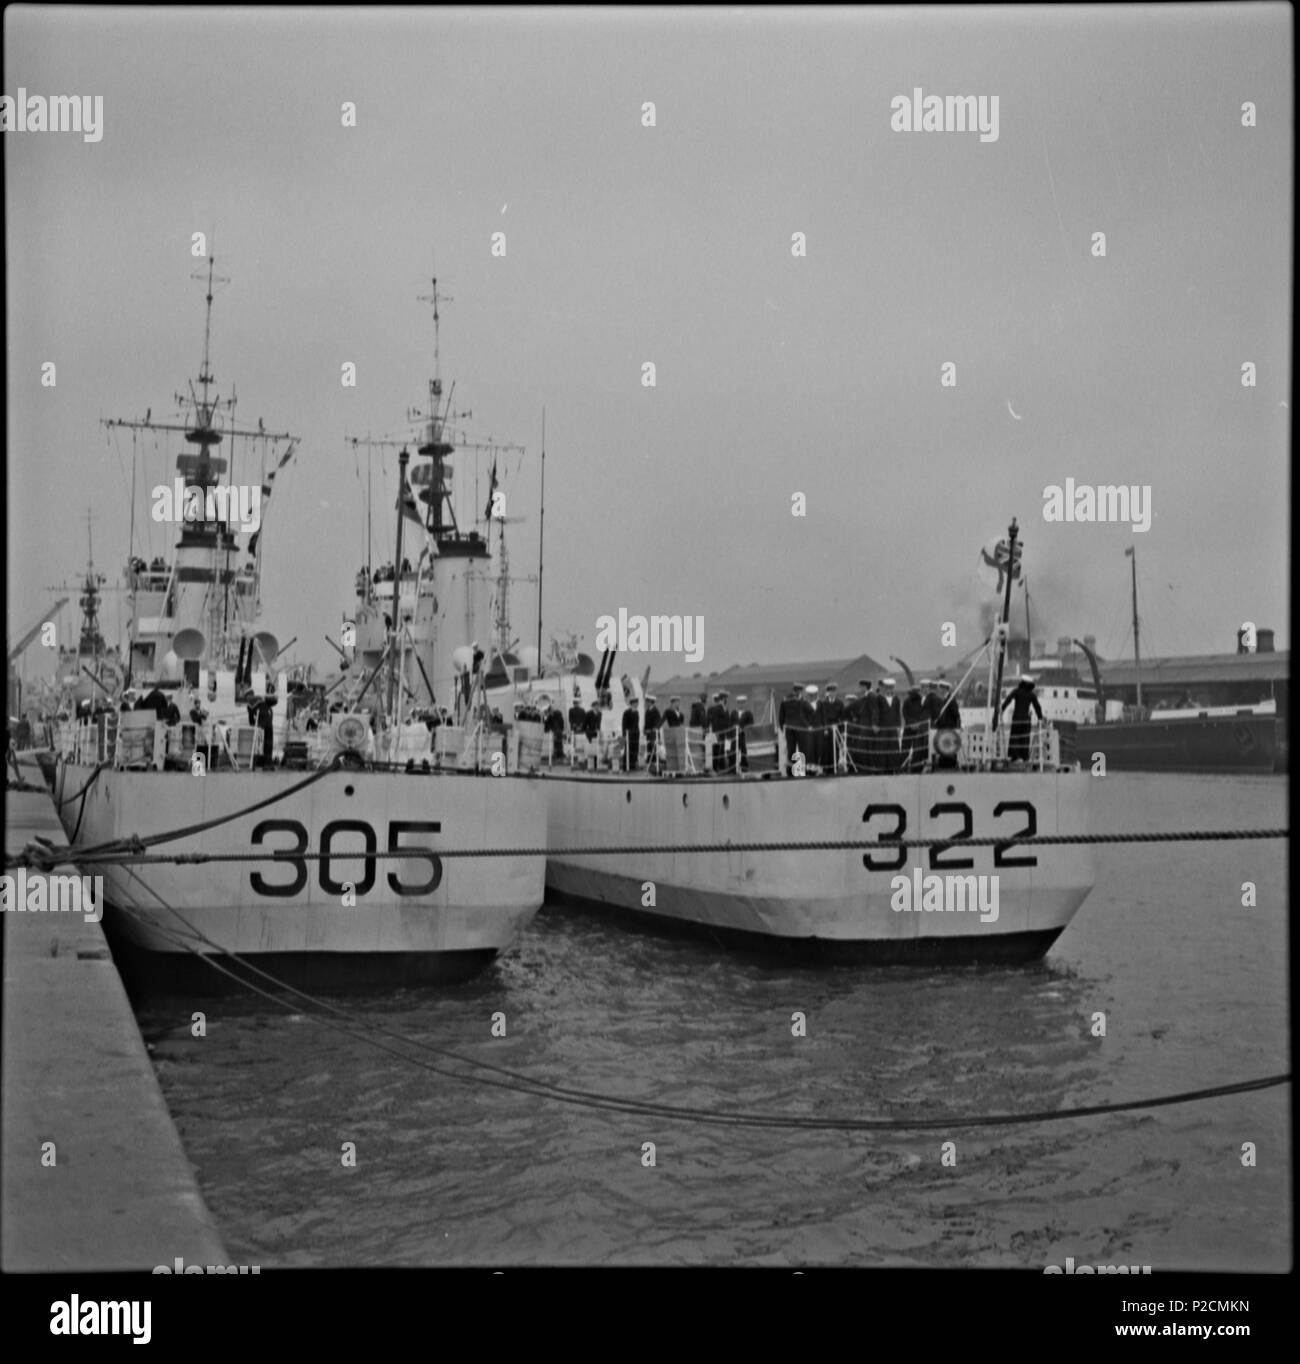 . Zwei Schiffe angedockt, Südwand, Co Dublin. Dies ist die Royal Canadian Navy (RCN) bei einem Besuch in Dublin 1962, 322 war der HMCS Lauzon und 305 La Hulloise. Es gab 4 Schiffe insgesamt mit mehr als 700 Matrosen. Alle der oben genannten Informationen wurde durch [/Fotos/129555378 @N07/Sharon geliefert. corbet] und Ihr Link unten, um die "Crow's Nest" Magazin wirklich Wert ist eine lesen, dank Sharon. Fotograf: James S. O'Dea Sammlung: James S. O'Dea Datum: 18. Juli 1962 NLI Ref.: ODEA 31/82 Sie können auch dieses Bild zu sehen, und viele Tausende von anderen im Katalog des NLI im Katalog. nli.ie. 11. Oktober Stockfoto